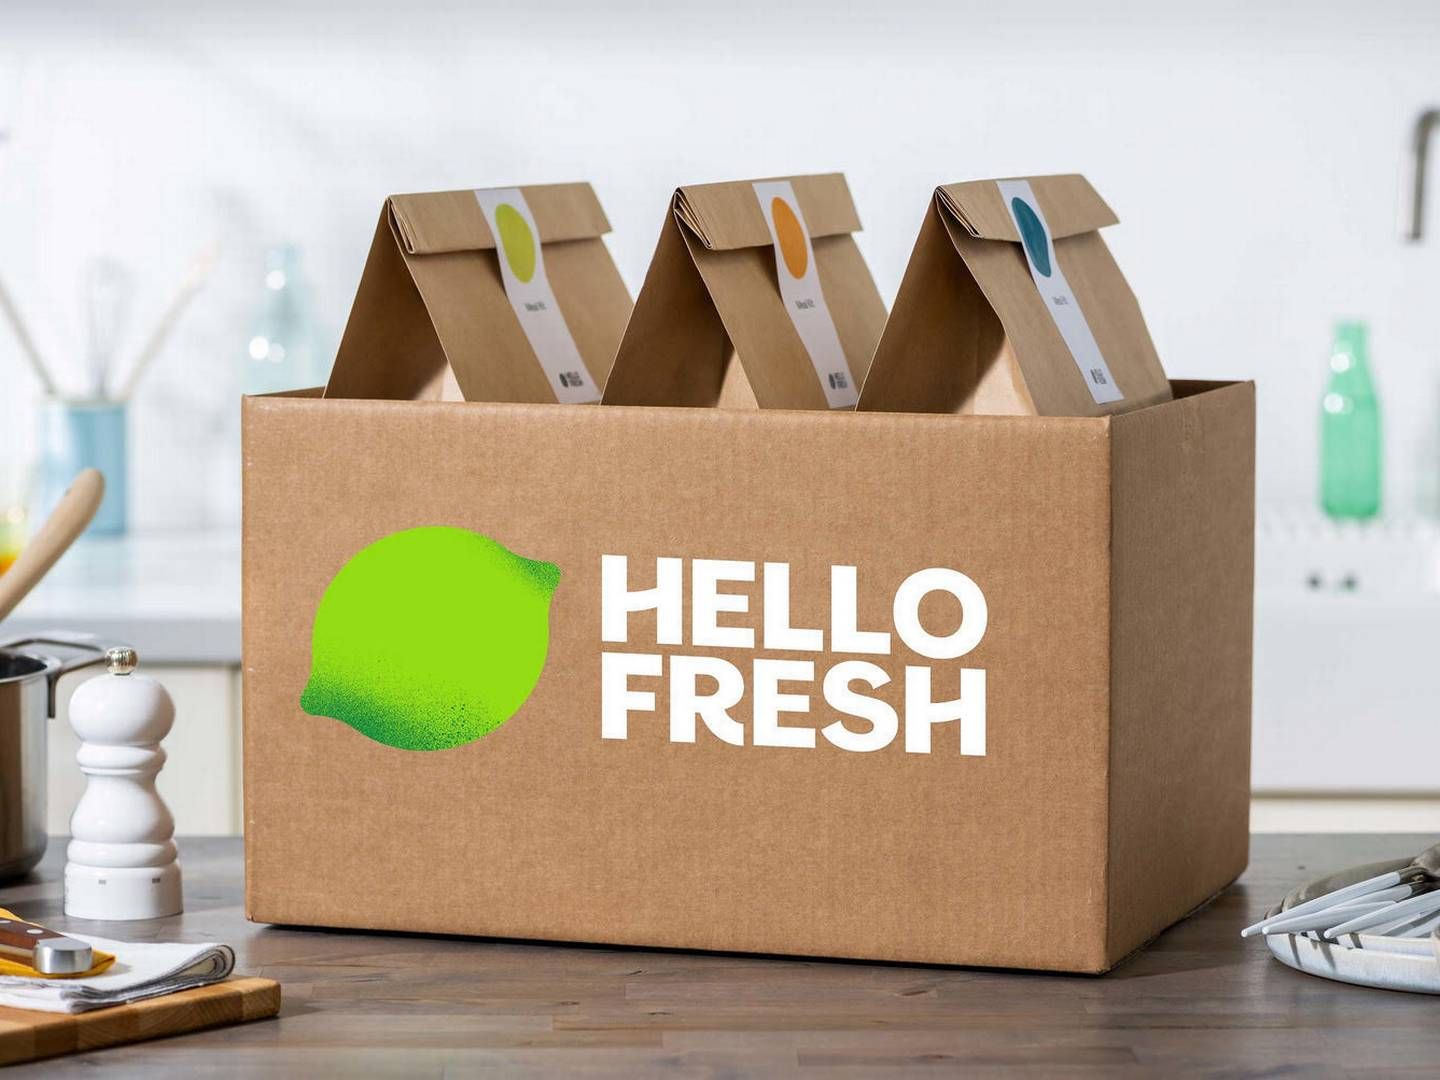 Hellofresh blev stiftet i Berlin i 2011 og startede salg til danske kunder i 2020. | Foto: Pr / Hellofresh